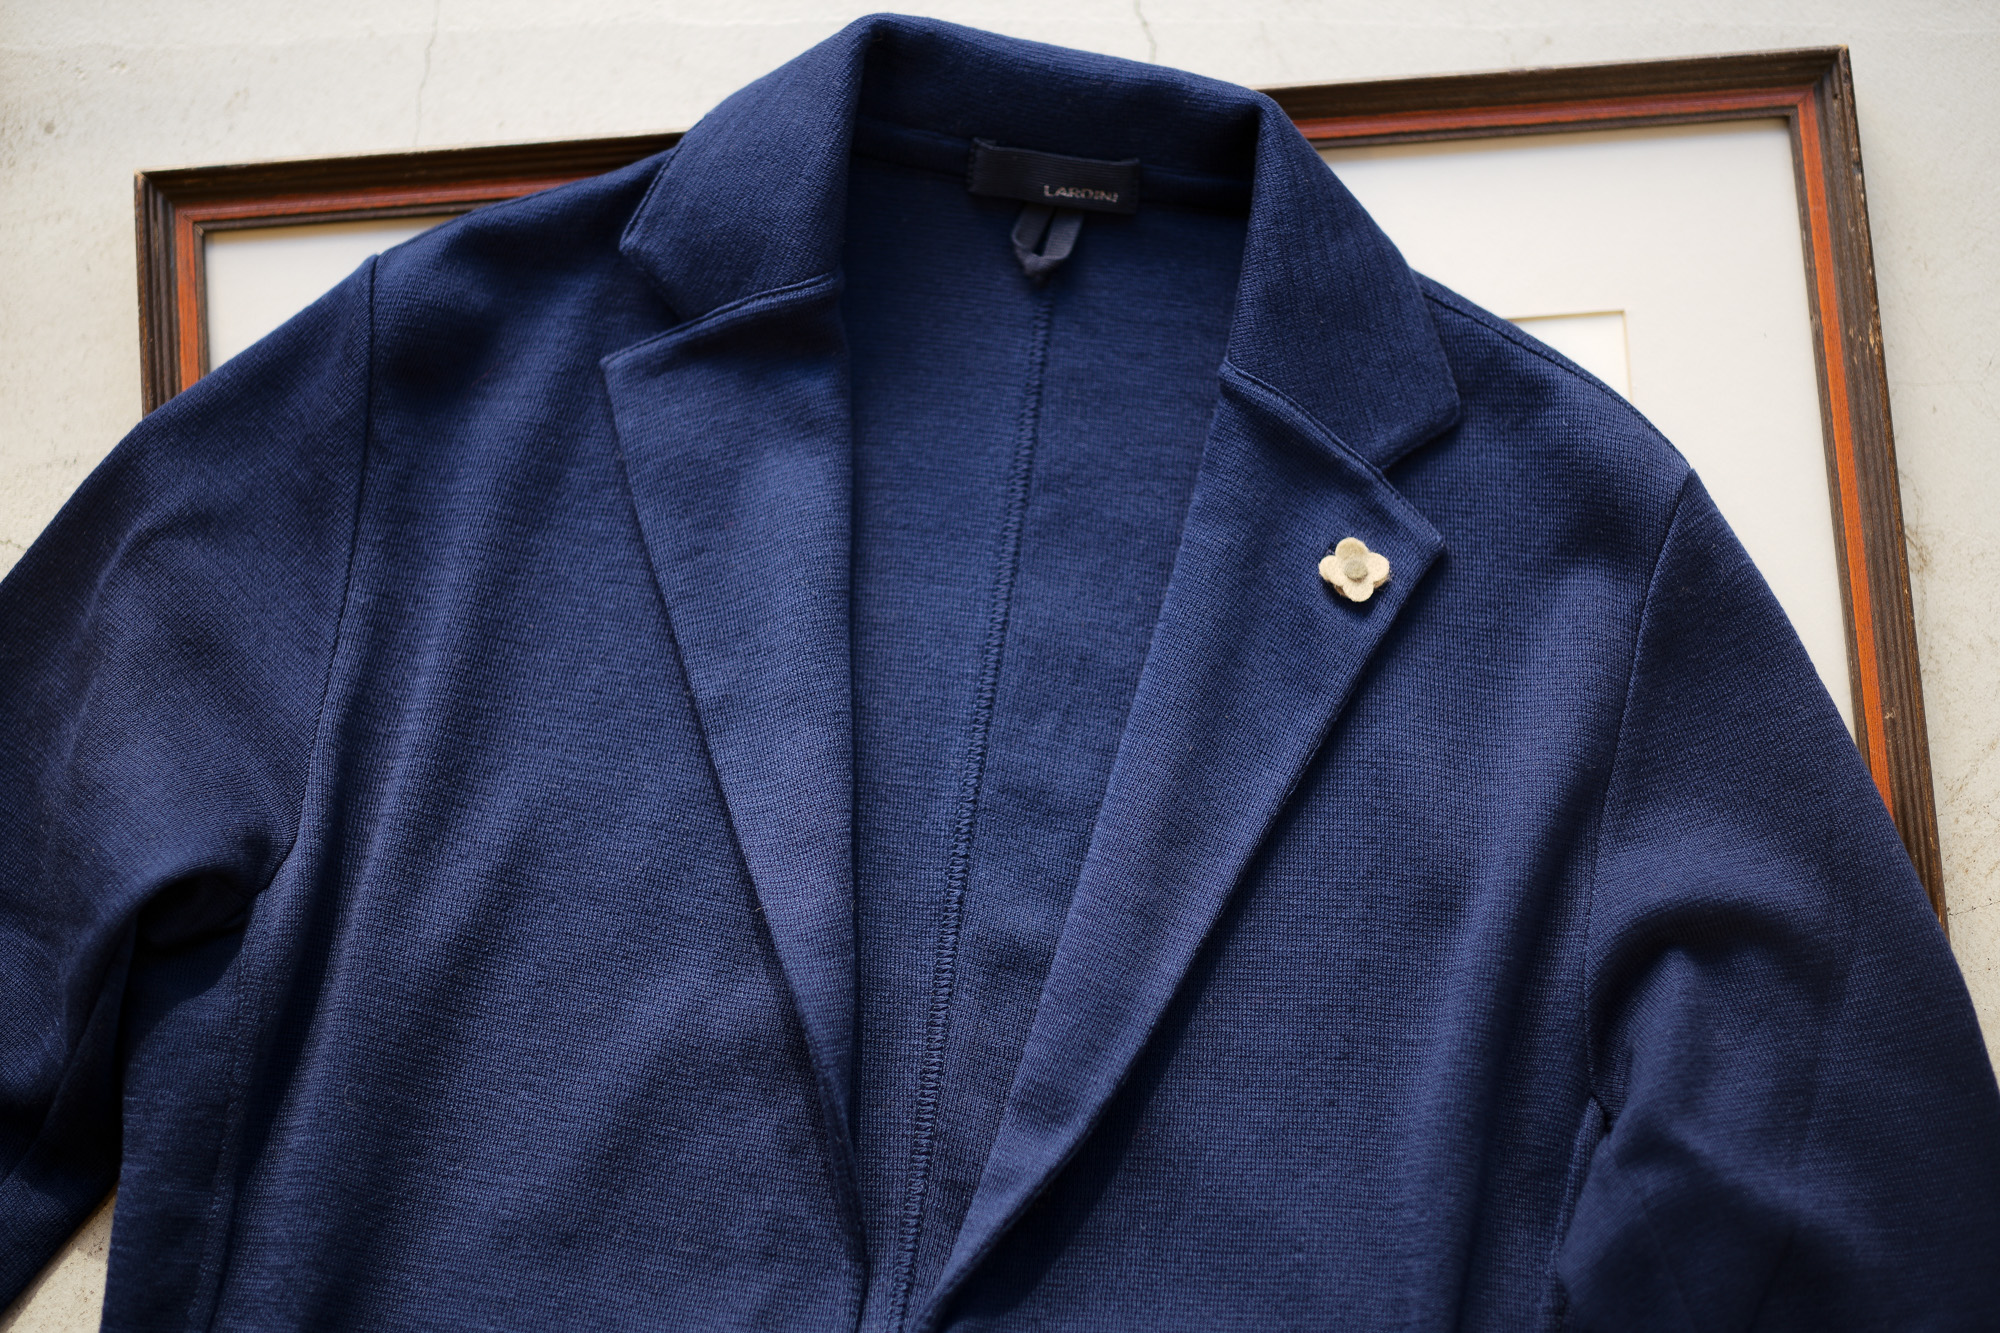 LARDINI (ラルディーニ) Milano Rib Knit Jacket (ミラノリブ ニット ジャケット) コットン ミラノリブ 2B  ニットジャケット BLUE(ブルー・820) Made in italy (イタリア製) 2019 春夏新作 –  正規通販・名古屋のメンズセレクトショップ Alto e Diritto